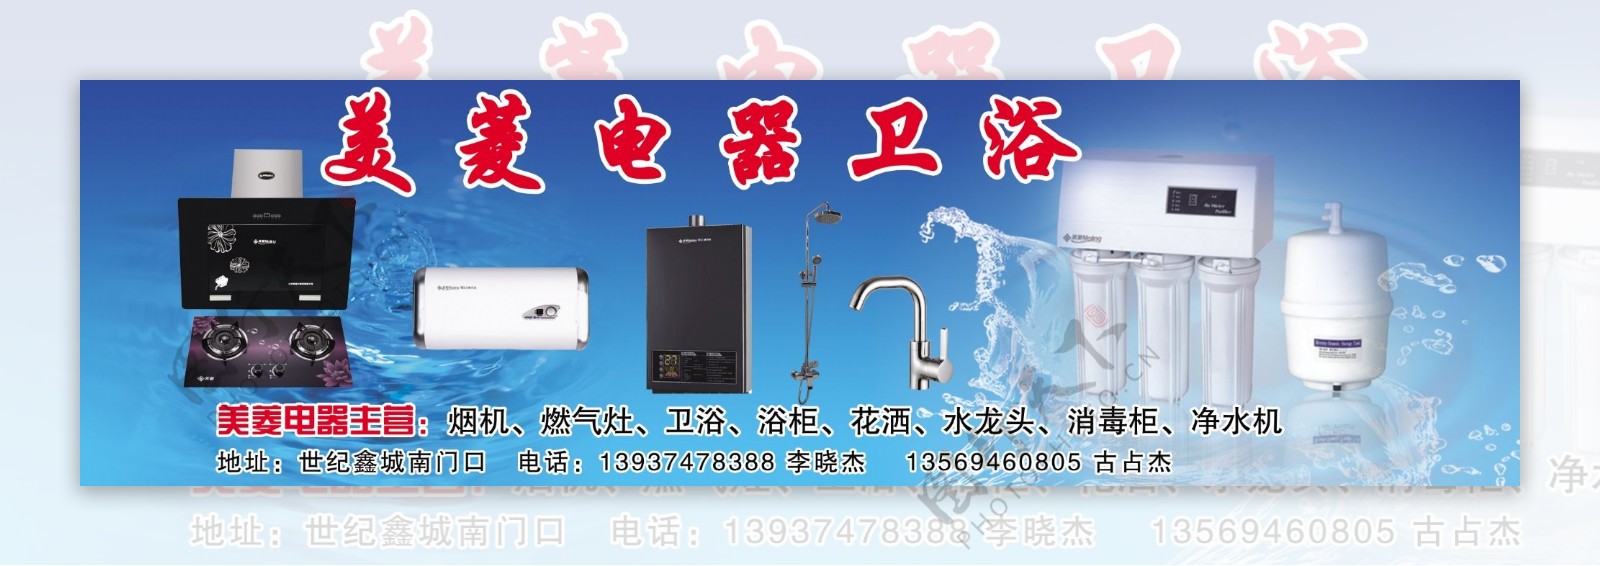 美菱电器卫浴产品宣传海报